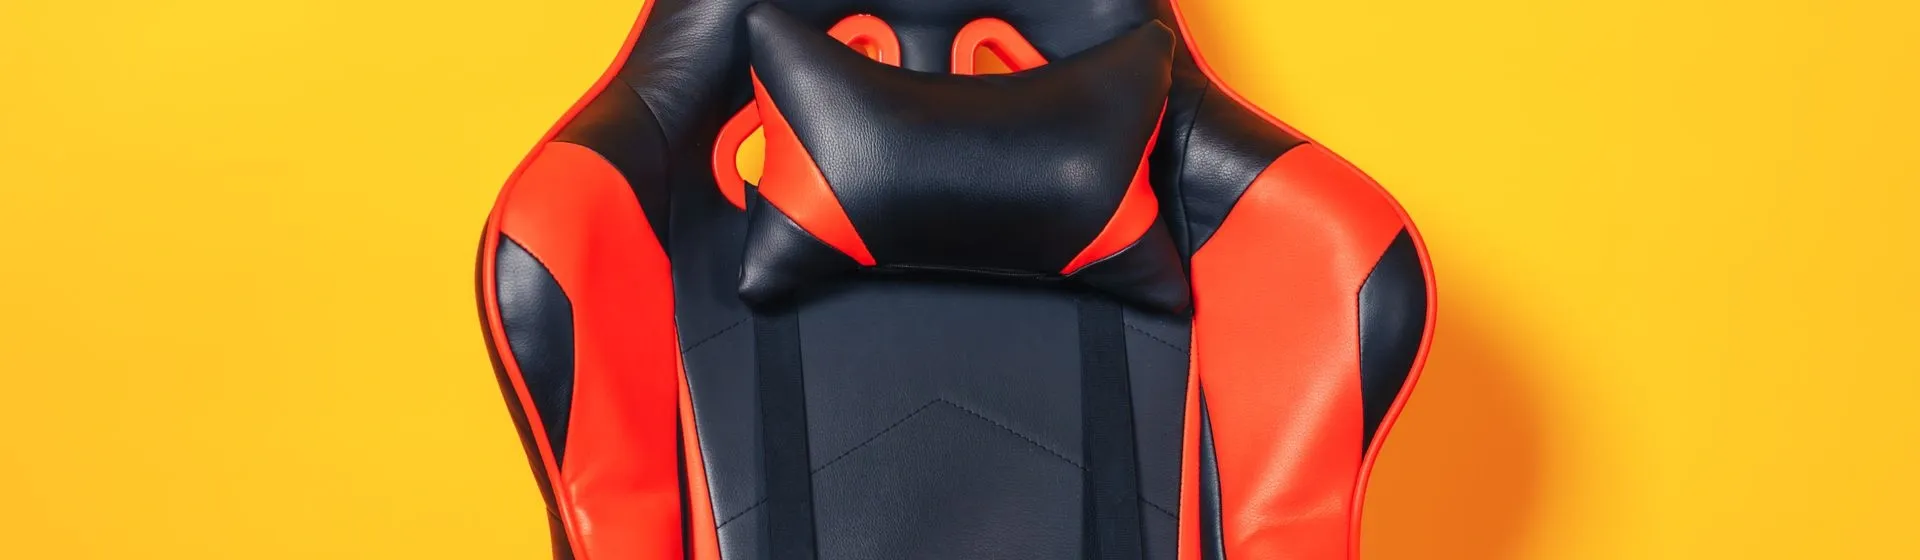 Melhor cadeira gamer vermelha em 2023: 6 opções com estilo e conforto